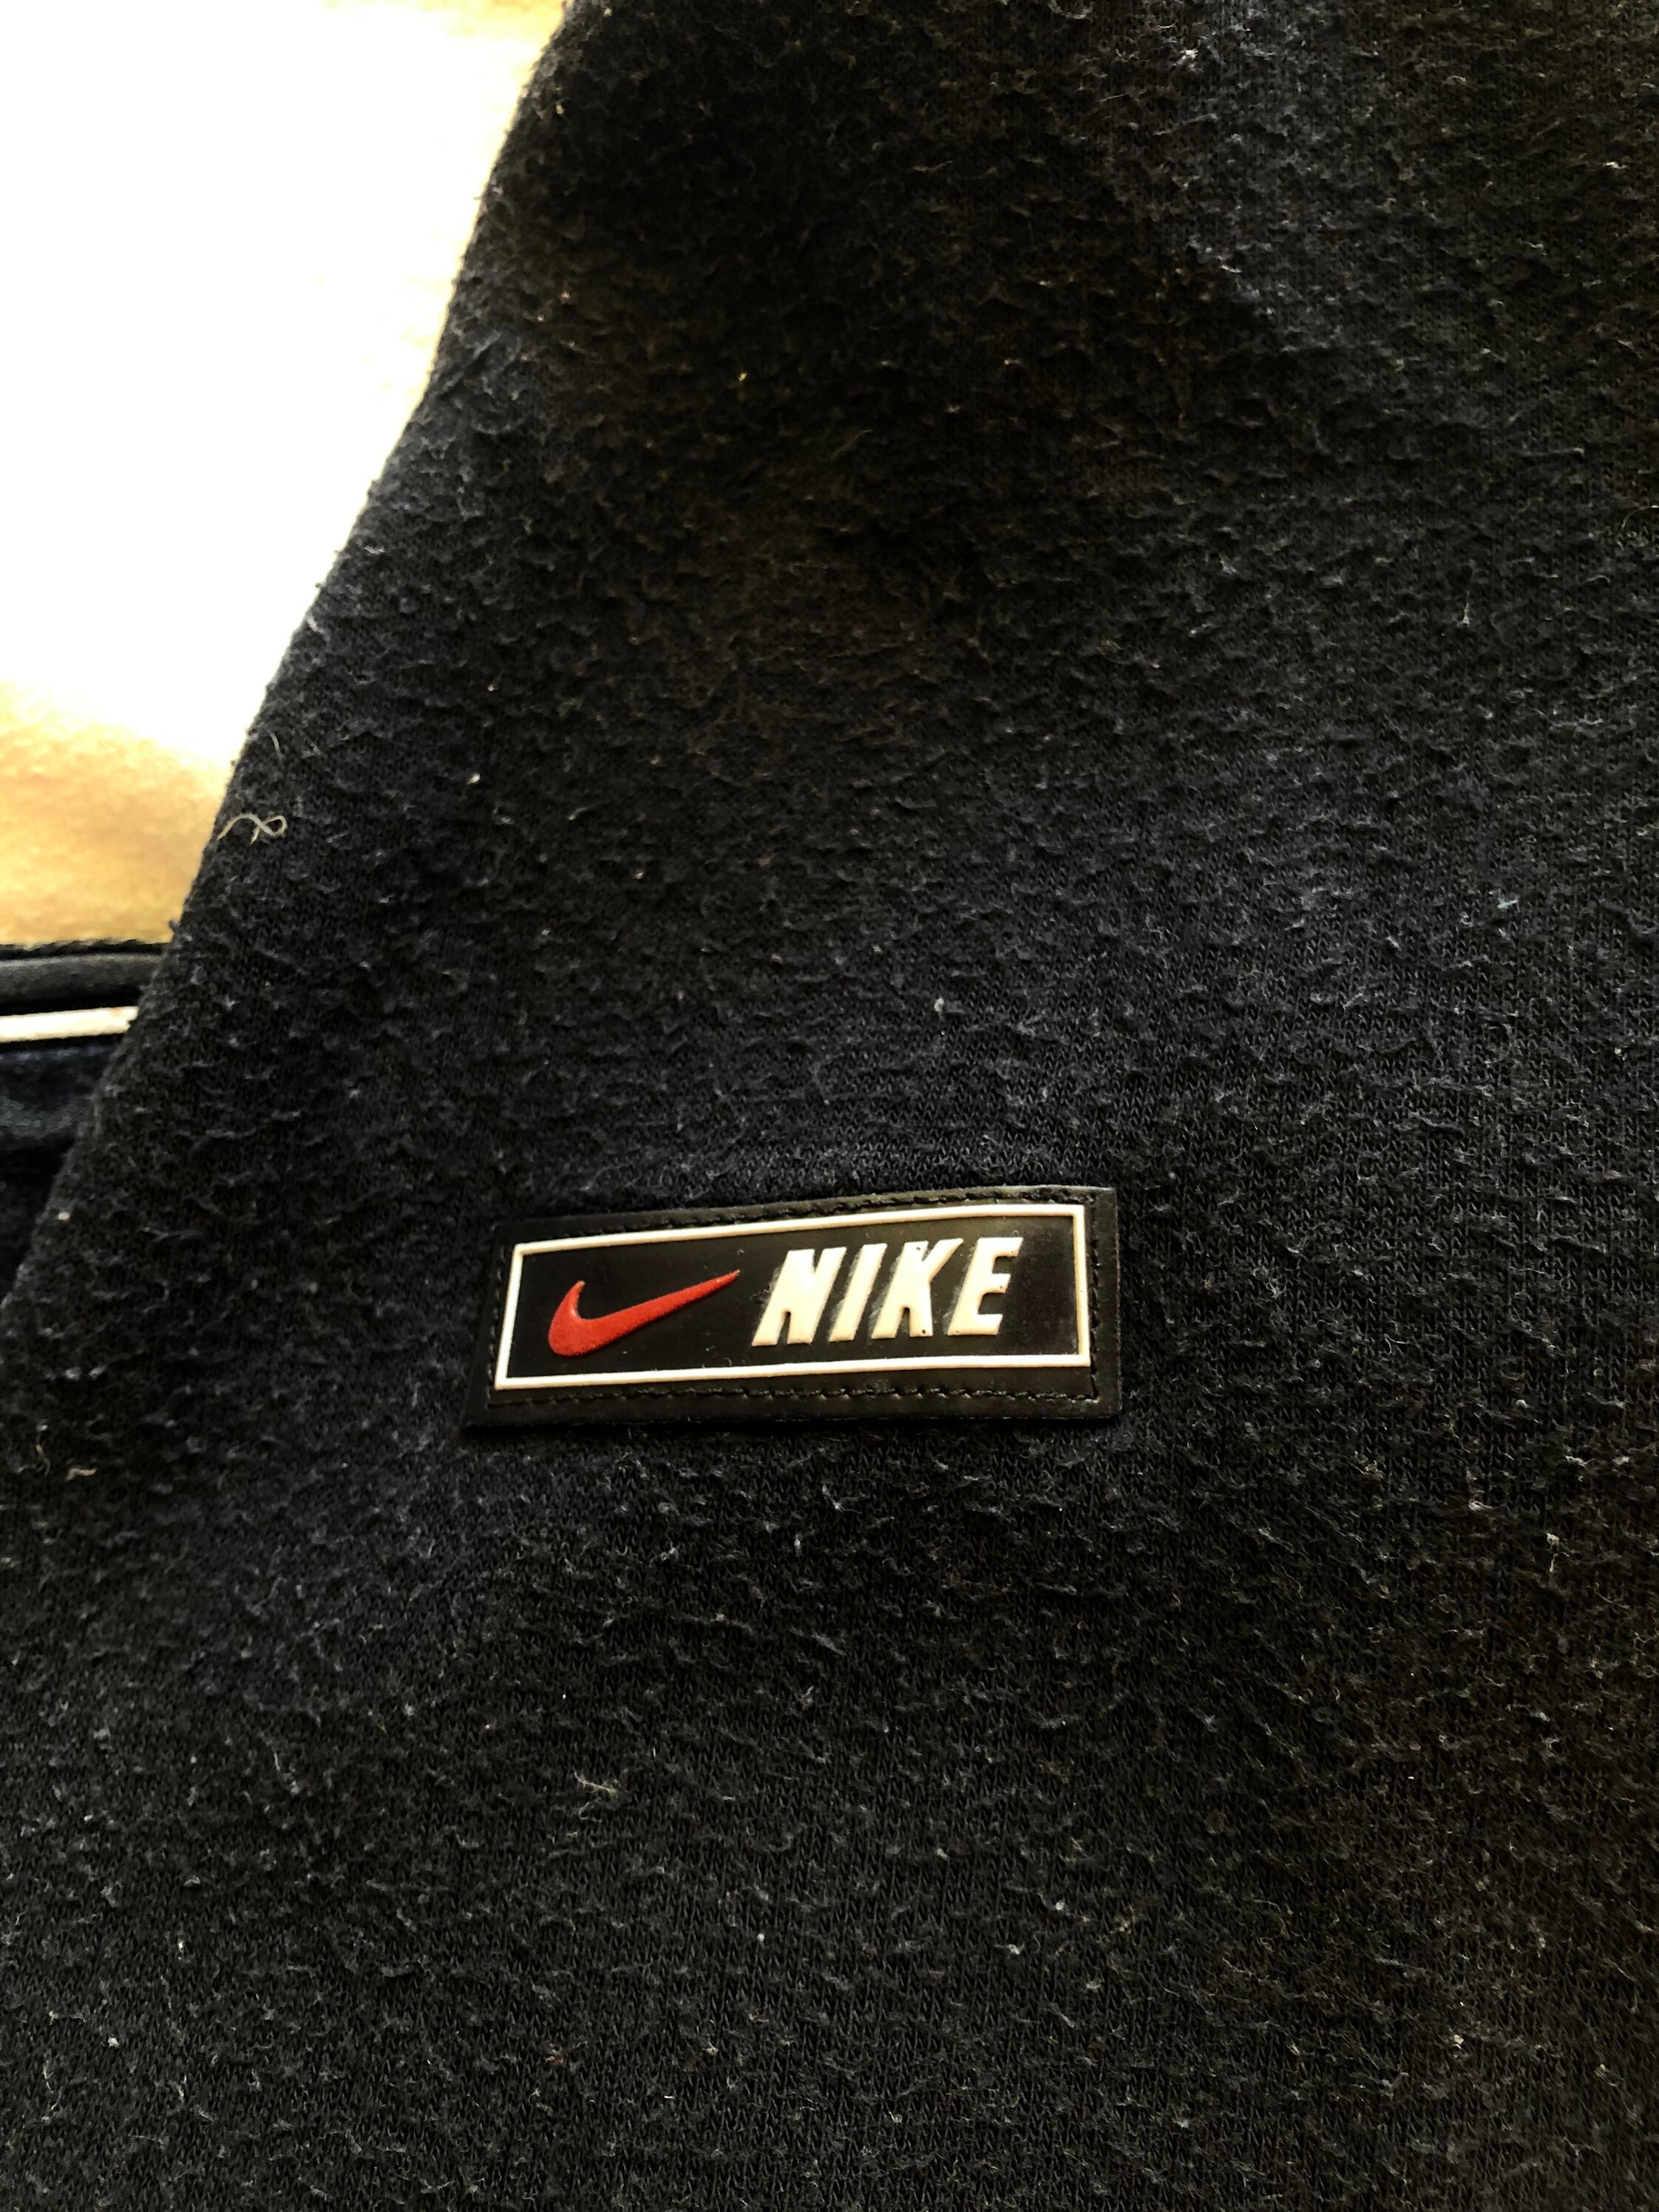 Bootleg Vintage Nike 2000s Spellout Black-White Crewneck | Etsy